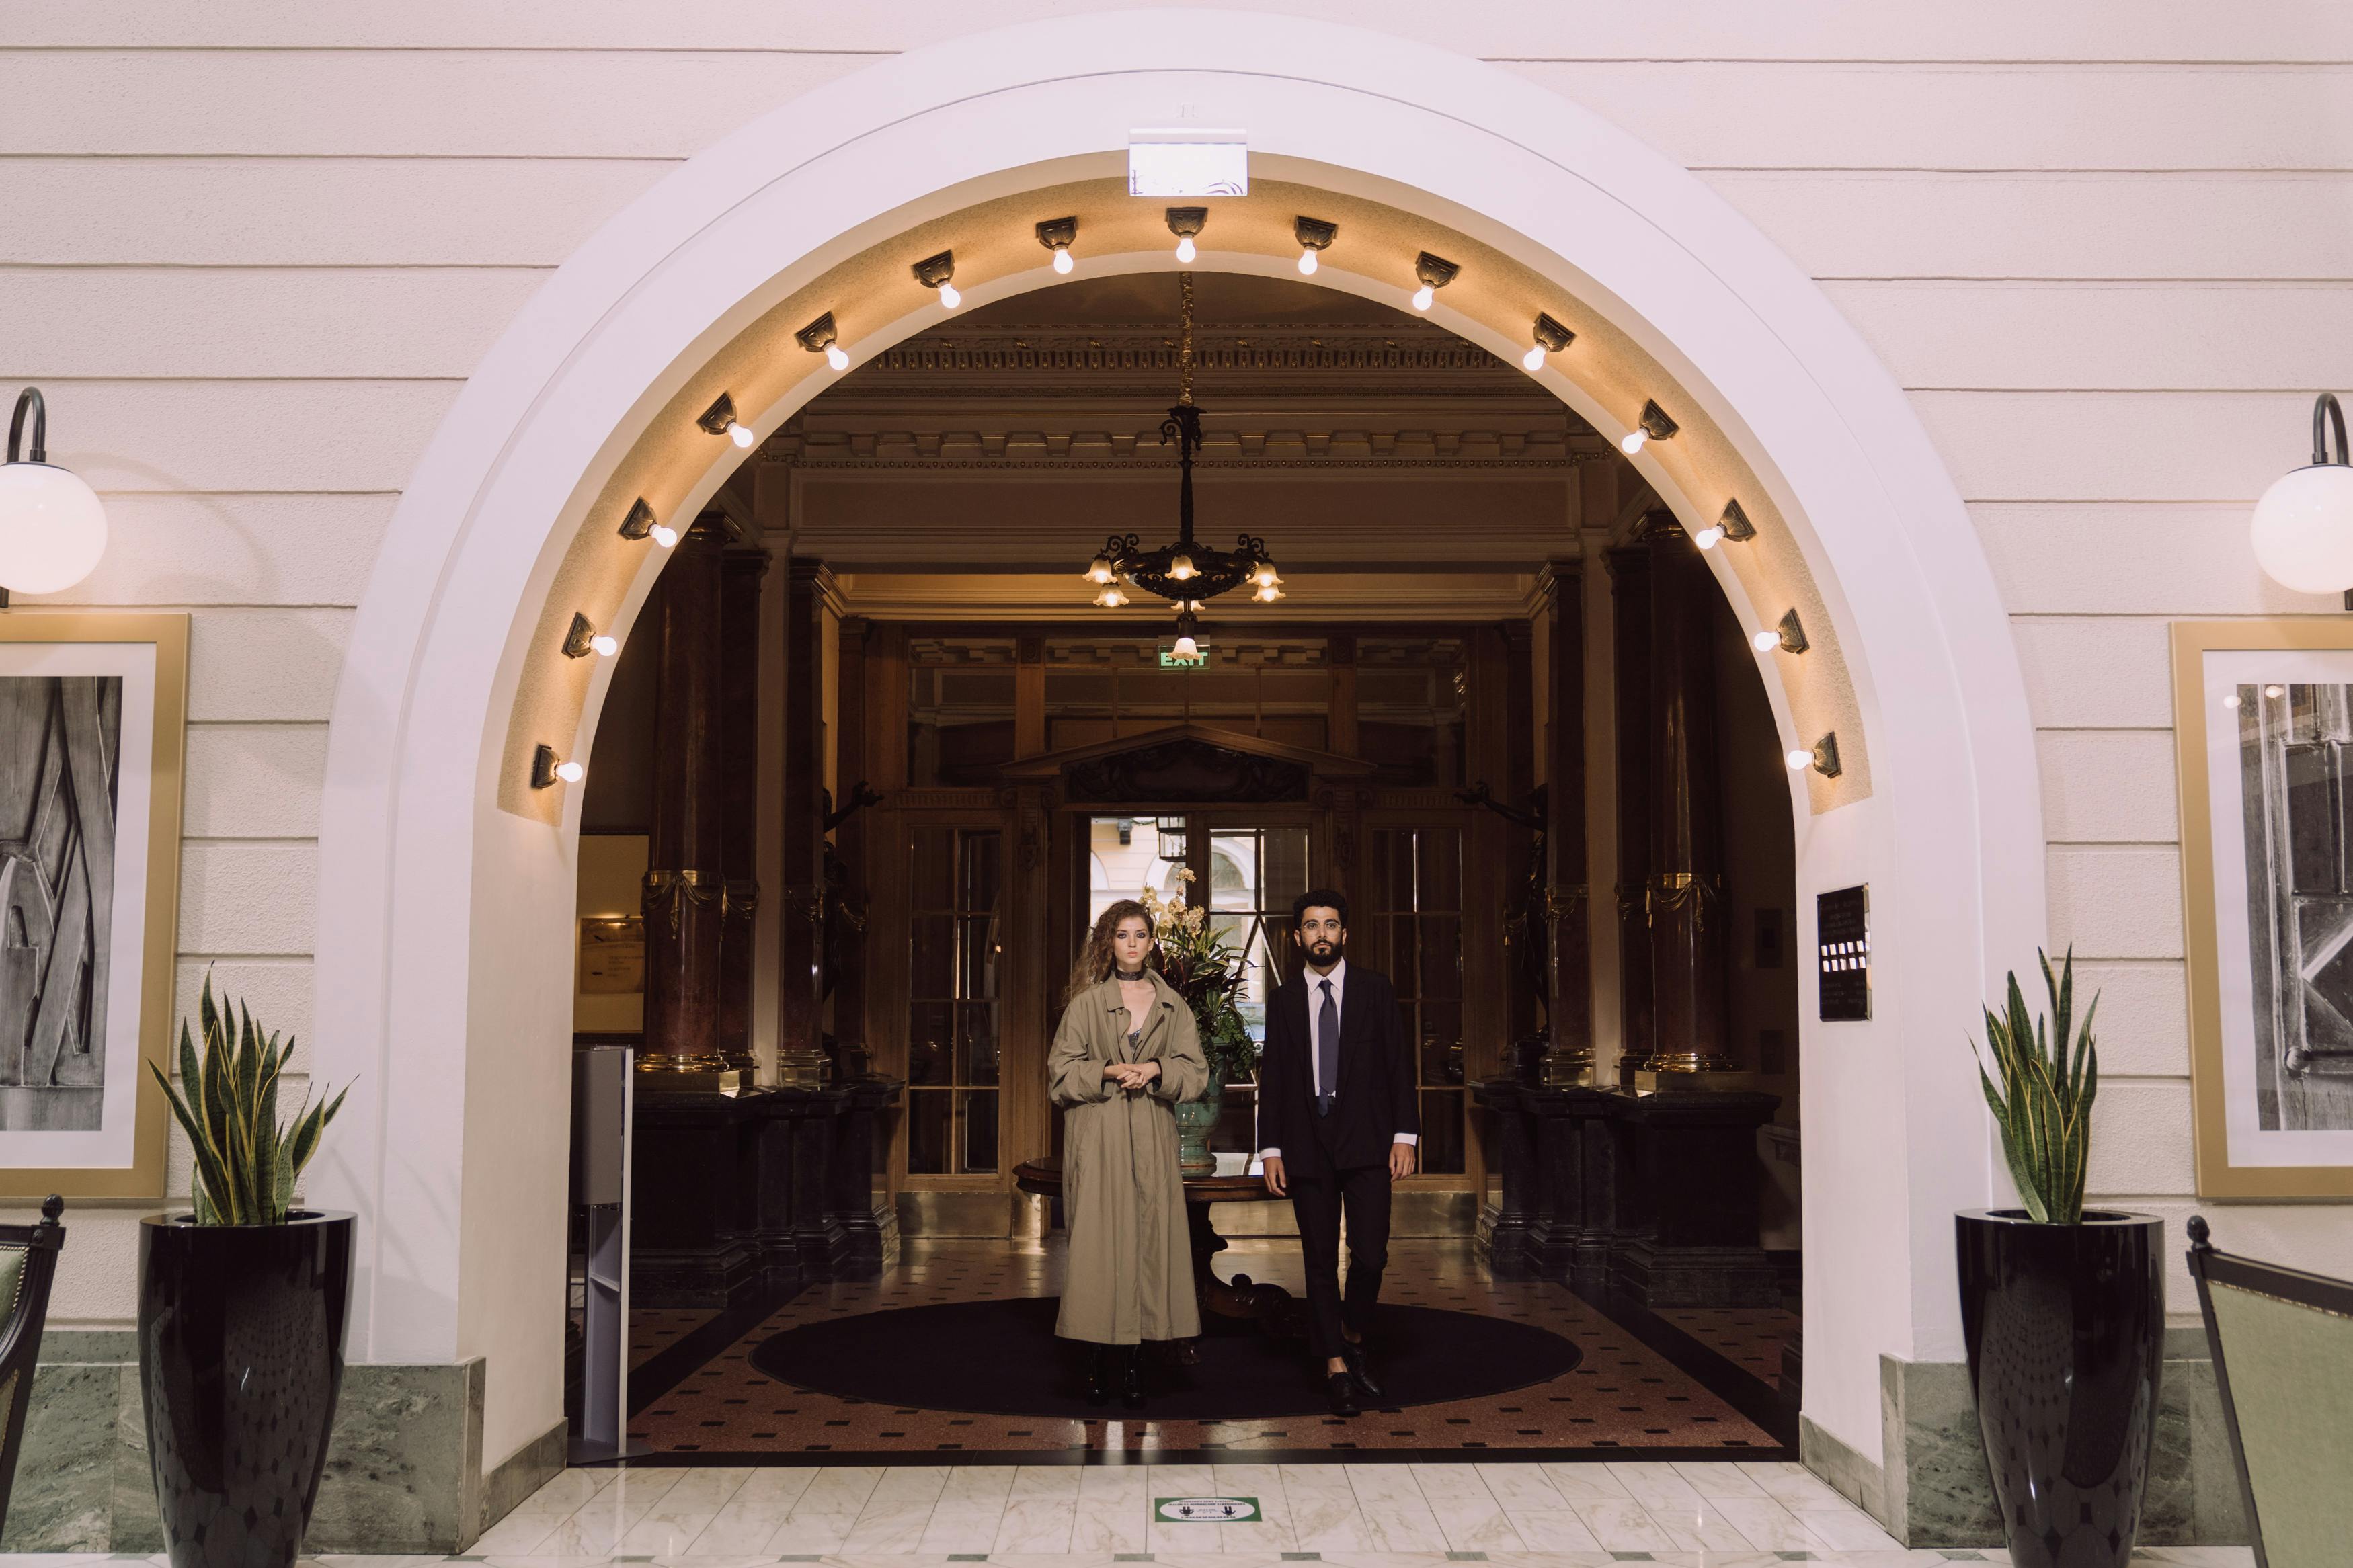 Deux personnes debout à l'entrée d'un hôtel | Source : Pexels